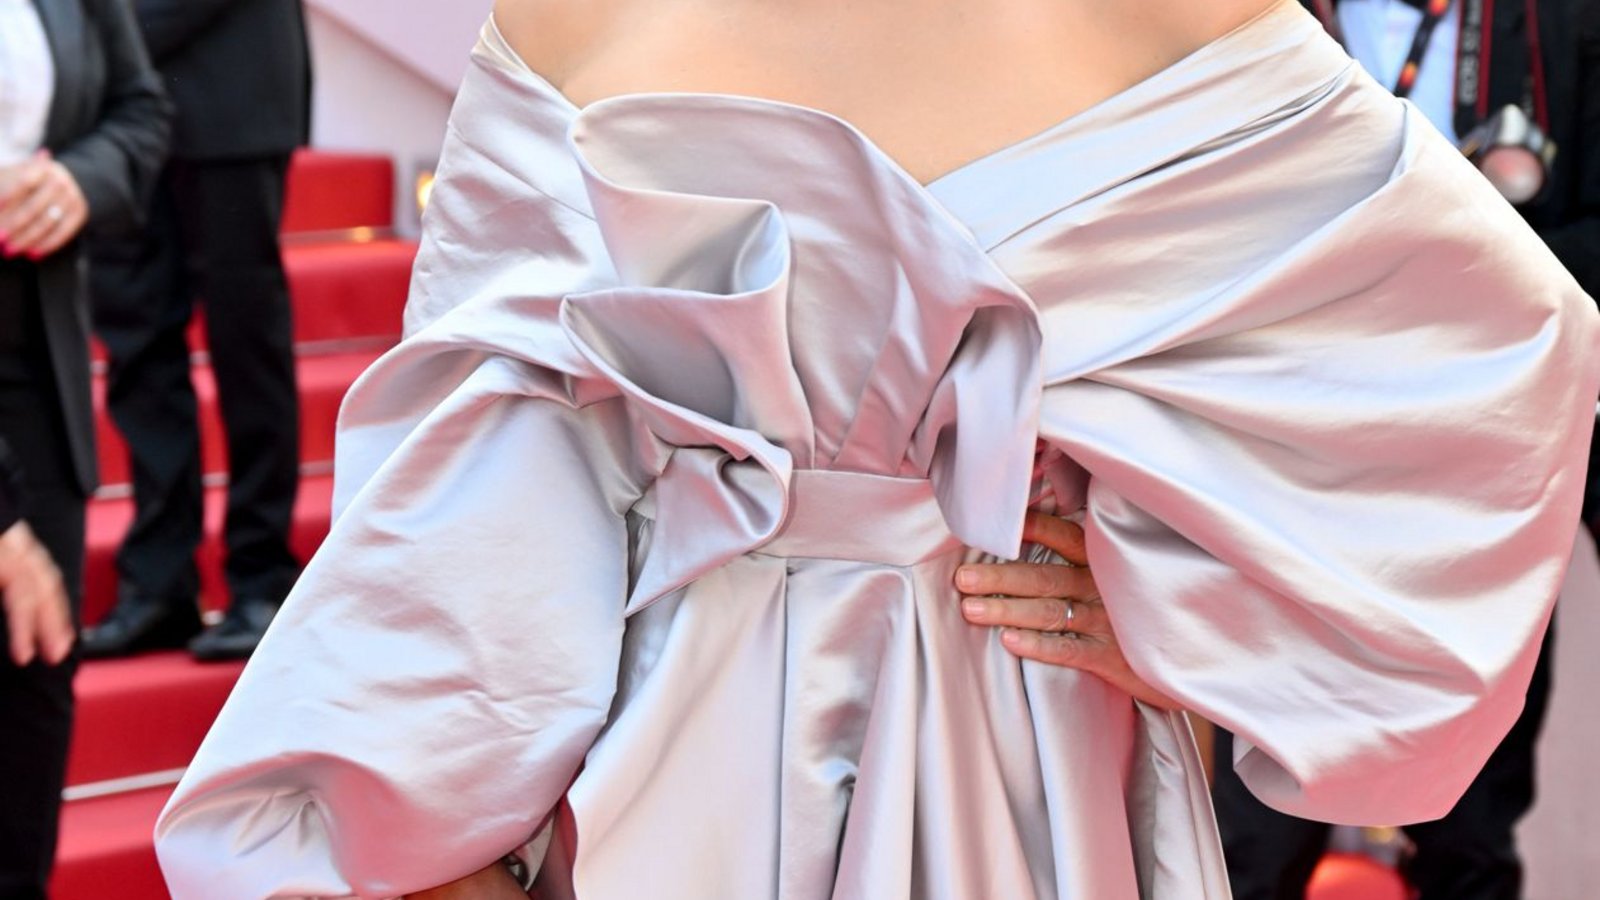 Silbergrau drapiert – die deutsche Schauspielerin Veronica Ferres trug ein Kleid der italienischen Modemacher Fovari.Foto: dpa/L.Urman